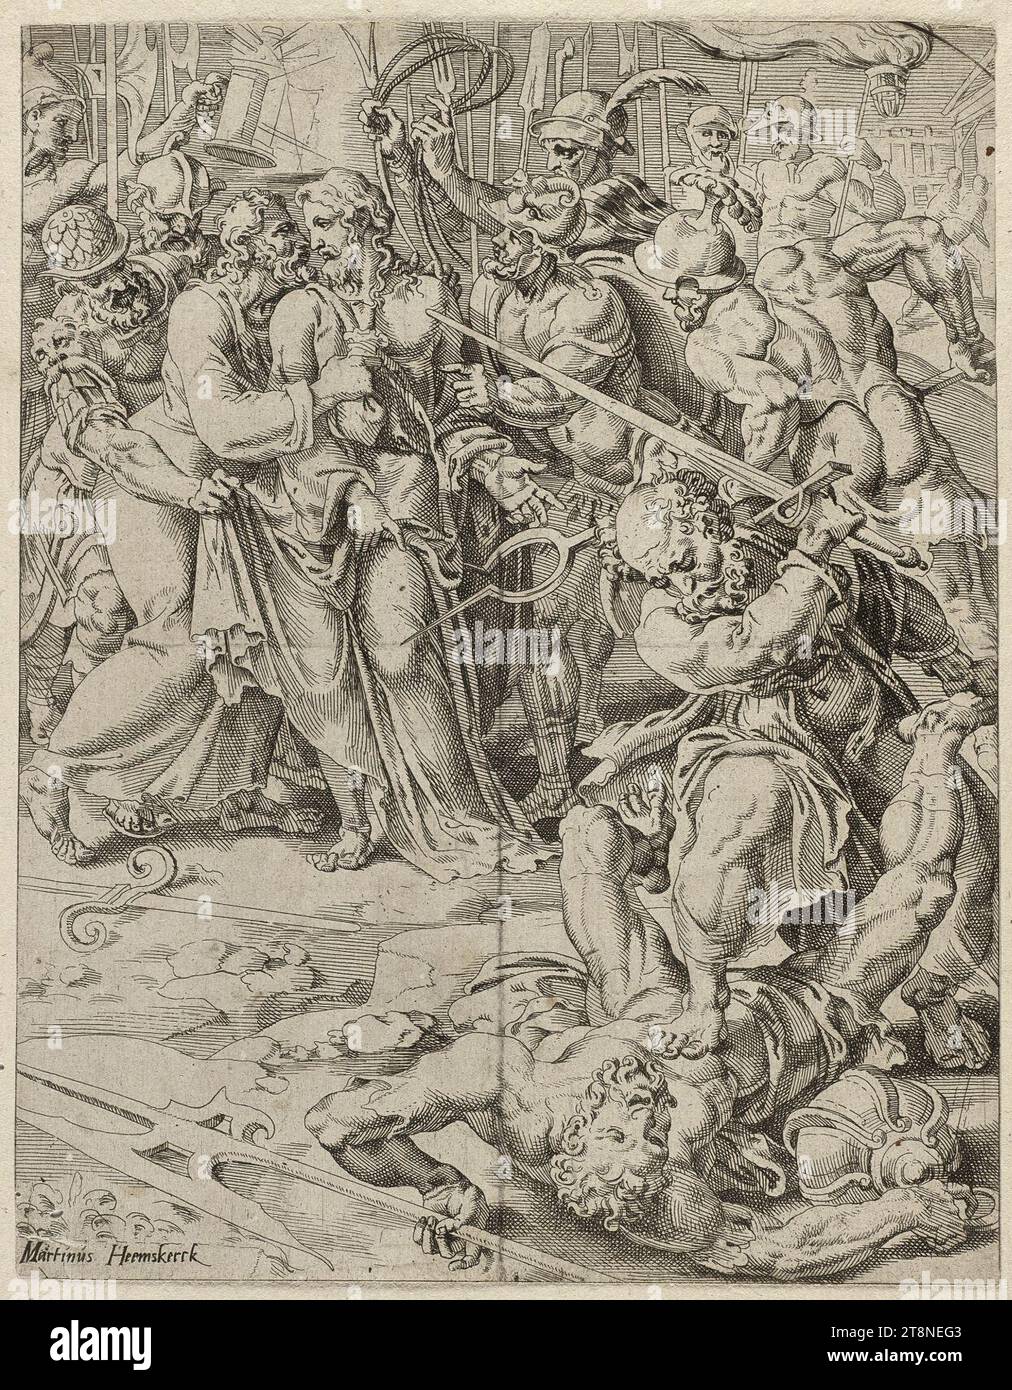 Verraad door Judas en arrestatie van Christus (Matheus 2647-51 Marcus 1443-47 Lucas 2247-50). Stock Photo